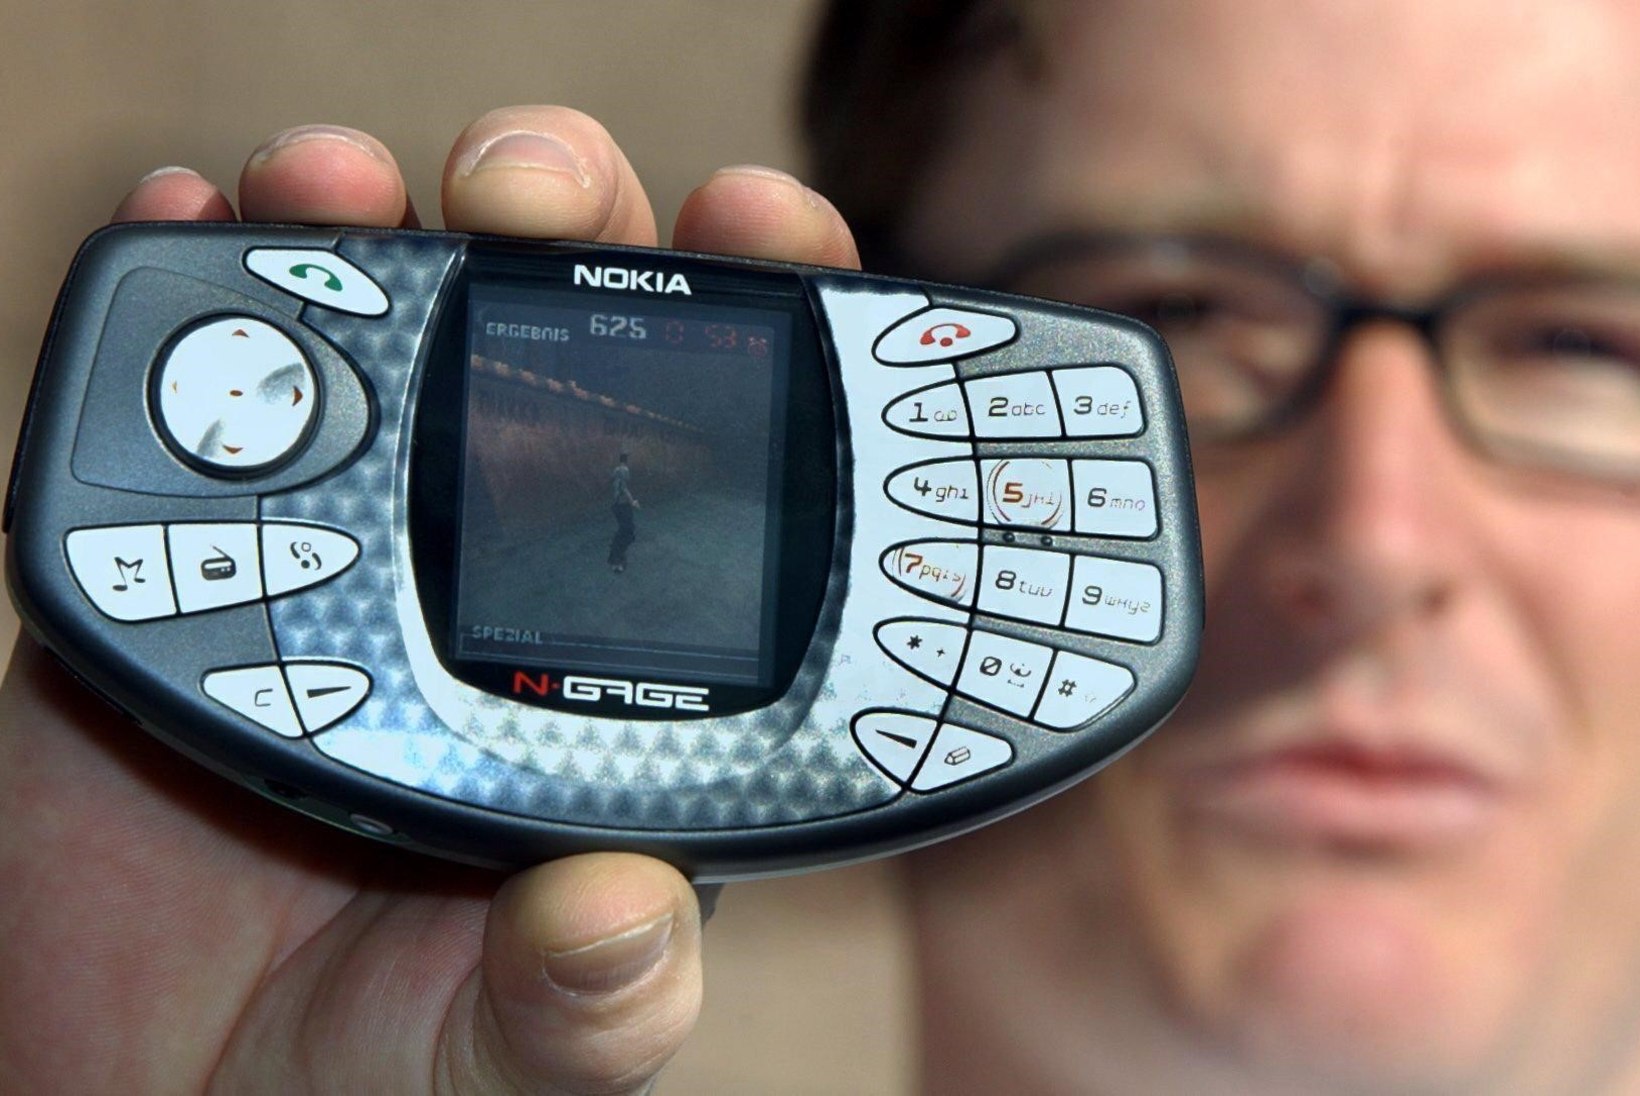 NOSTALGIAMINUTID: 3310 taastuleku valguses galerii omaaegsetest poppidest Nokia telefonidest